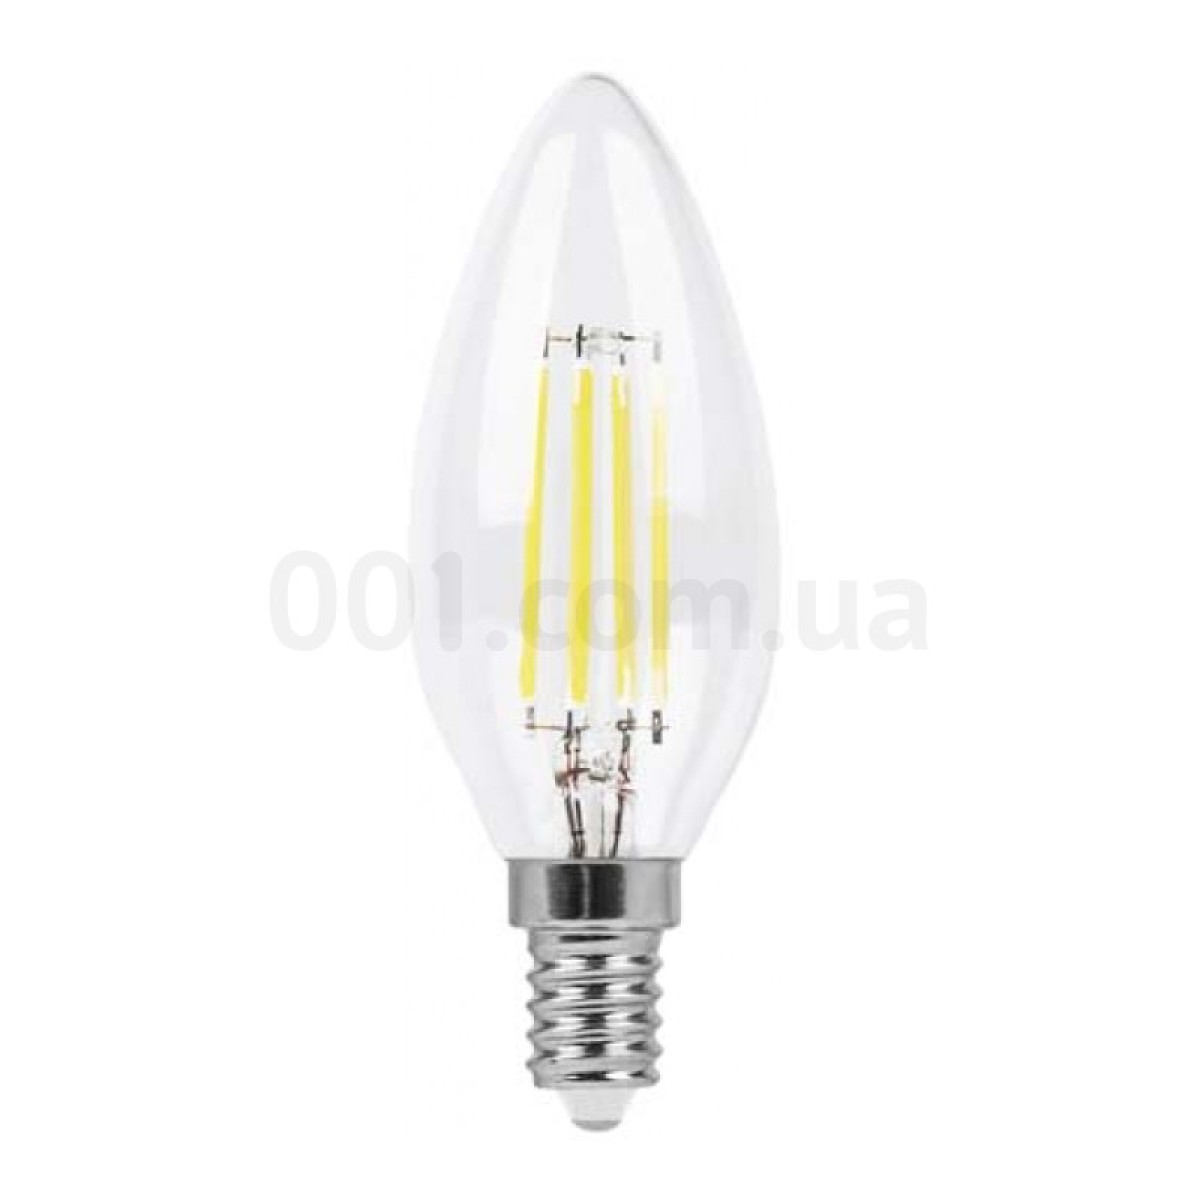 Світлодіодна лампа LB-58 C37 (свічка) філамент 4Вт 4000K E14, Feron 256_256.jpg